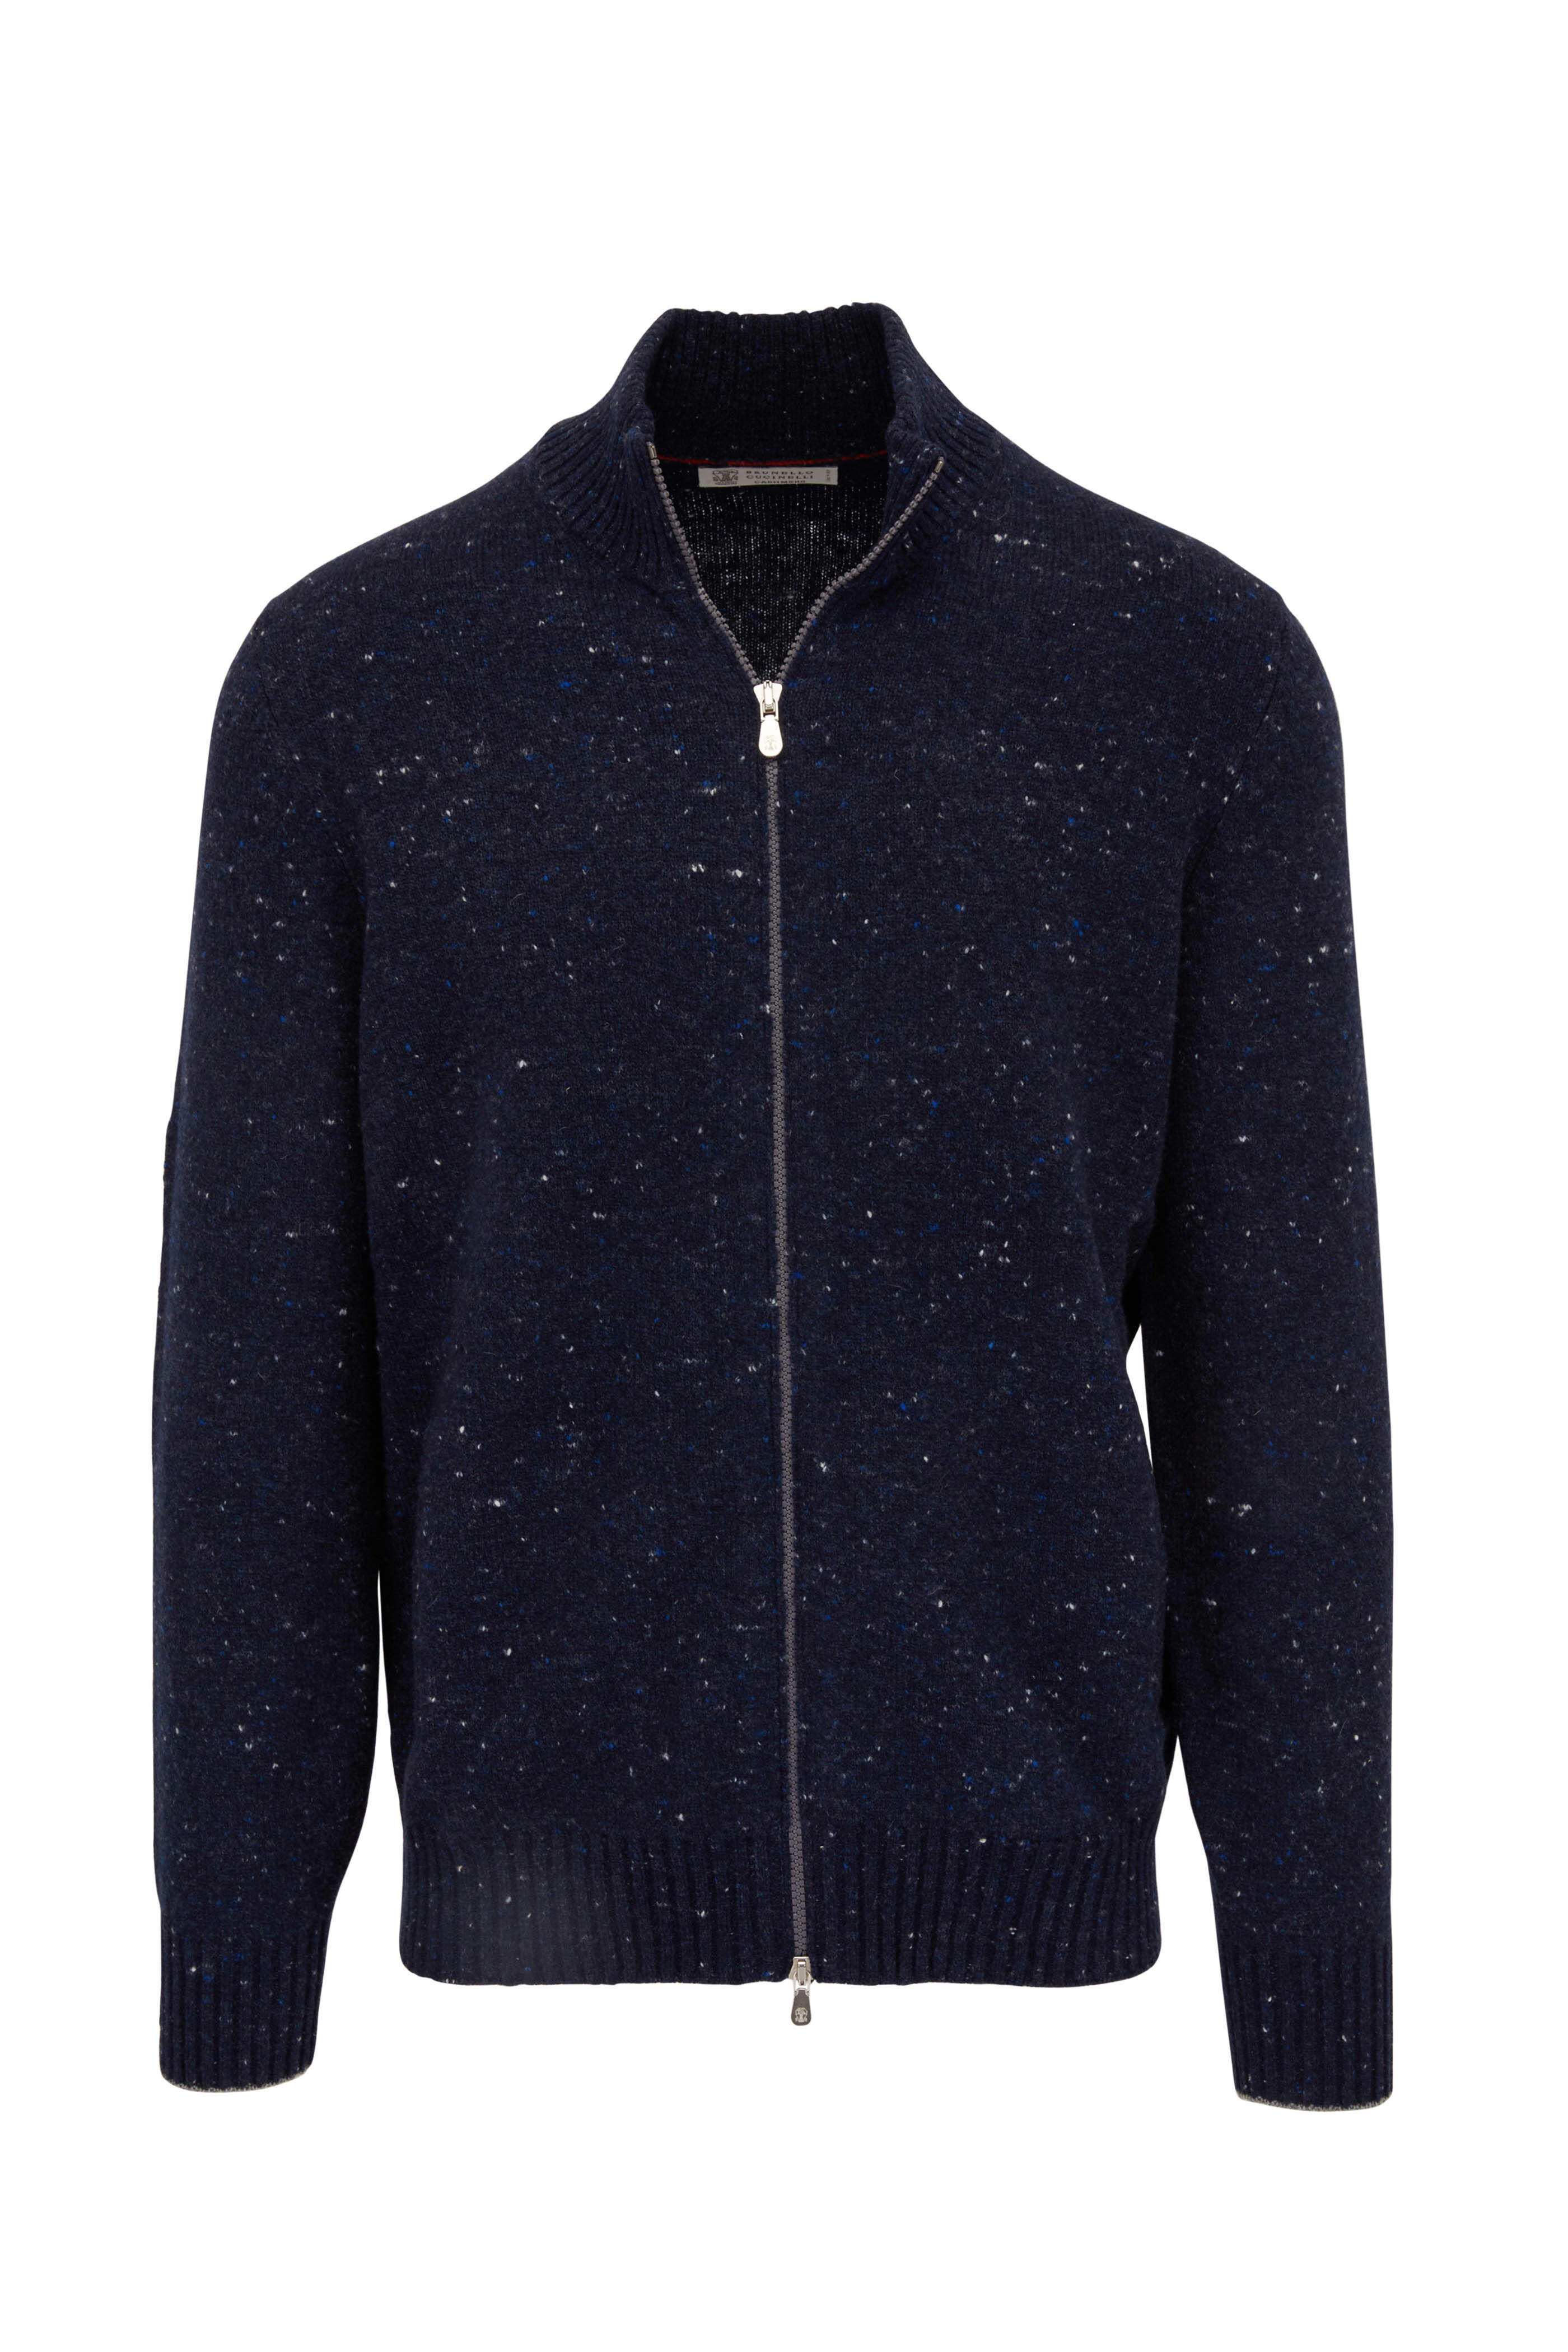 Brunello Cucinelli - Navy Full Zip Sweater | Mitchell Stores